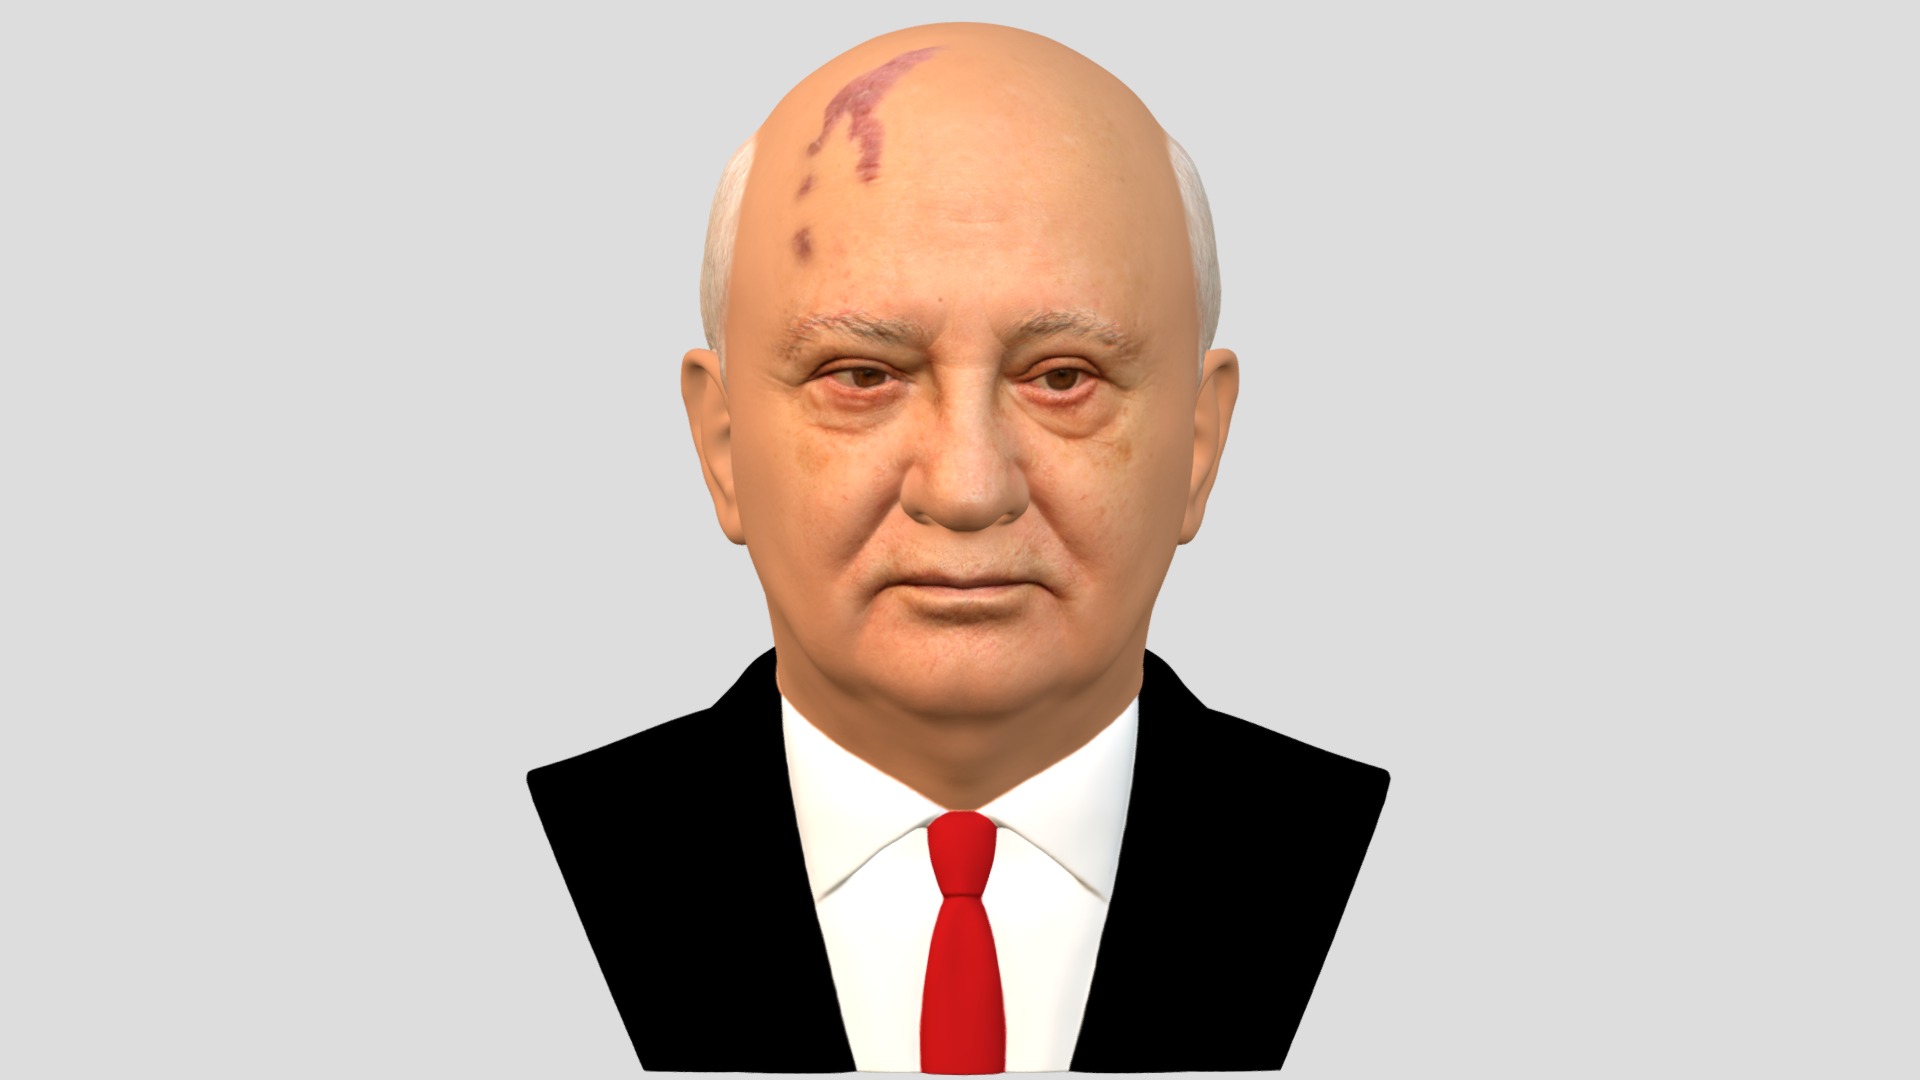 3D model Mikhail Gorbachev bust full color 3D printing - This is a 3D model of the Mikhail Gorbachev bust full color 3D printing. The 3D model is about a bald man in a suit.